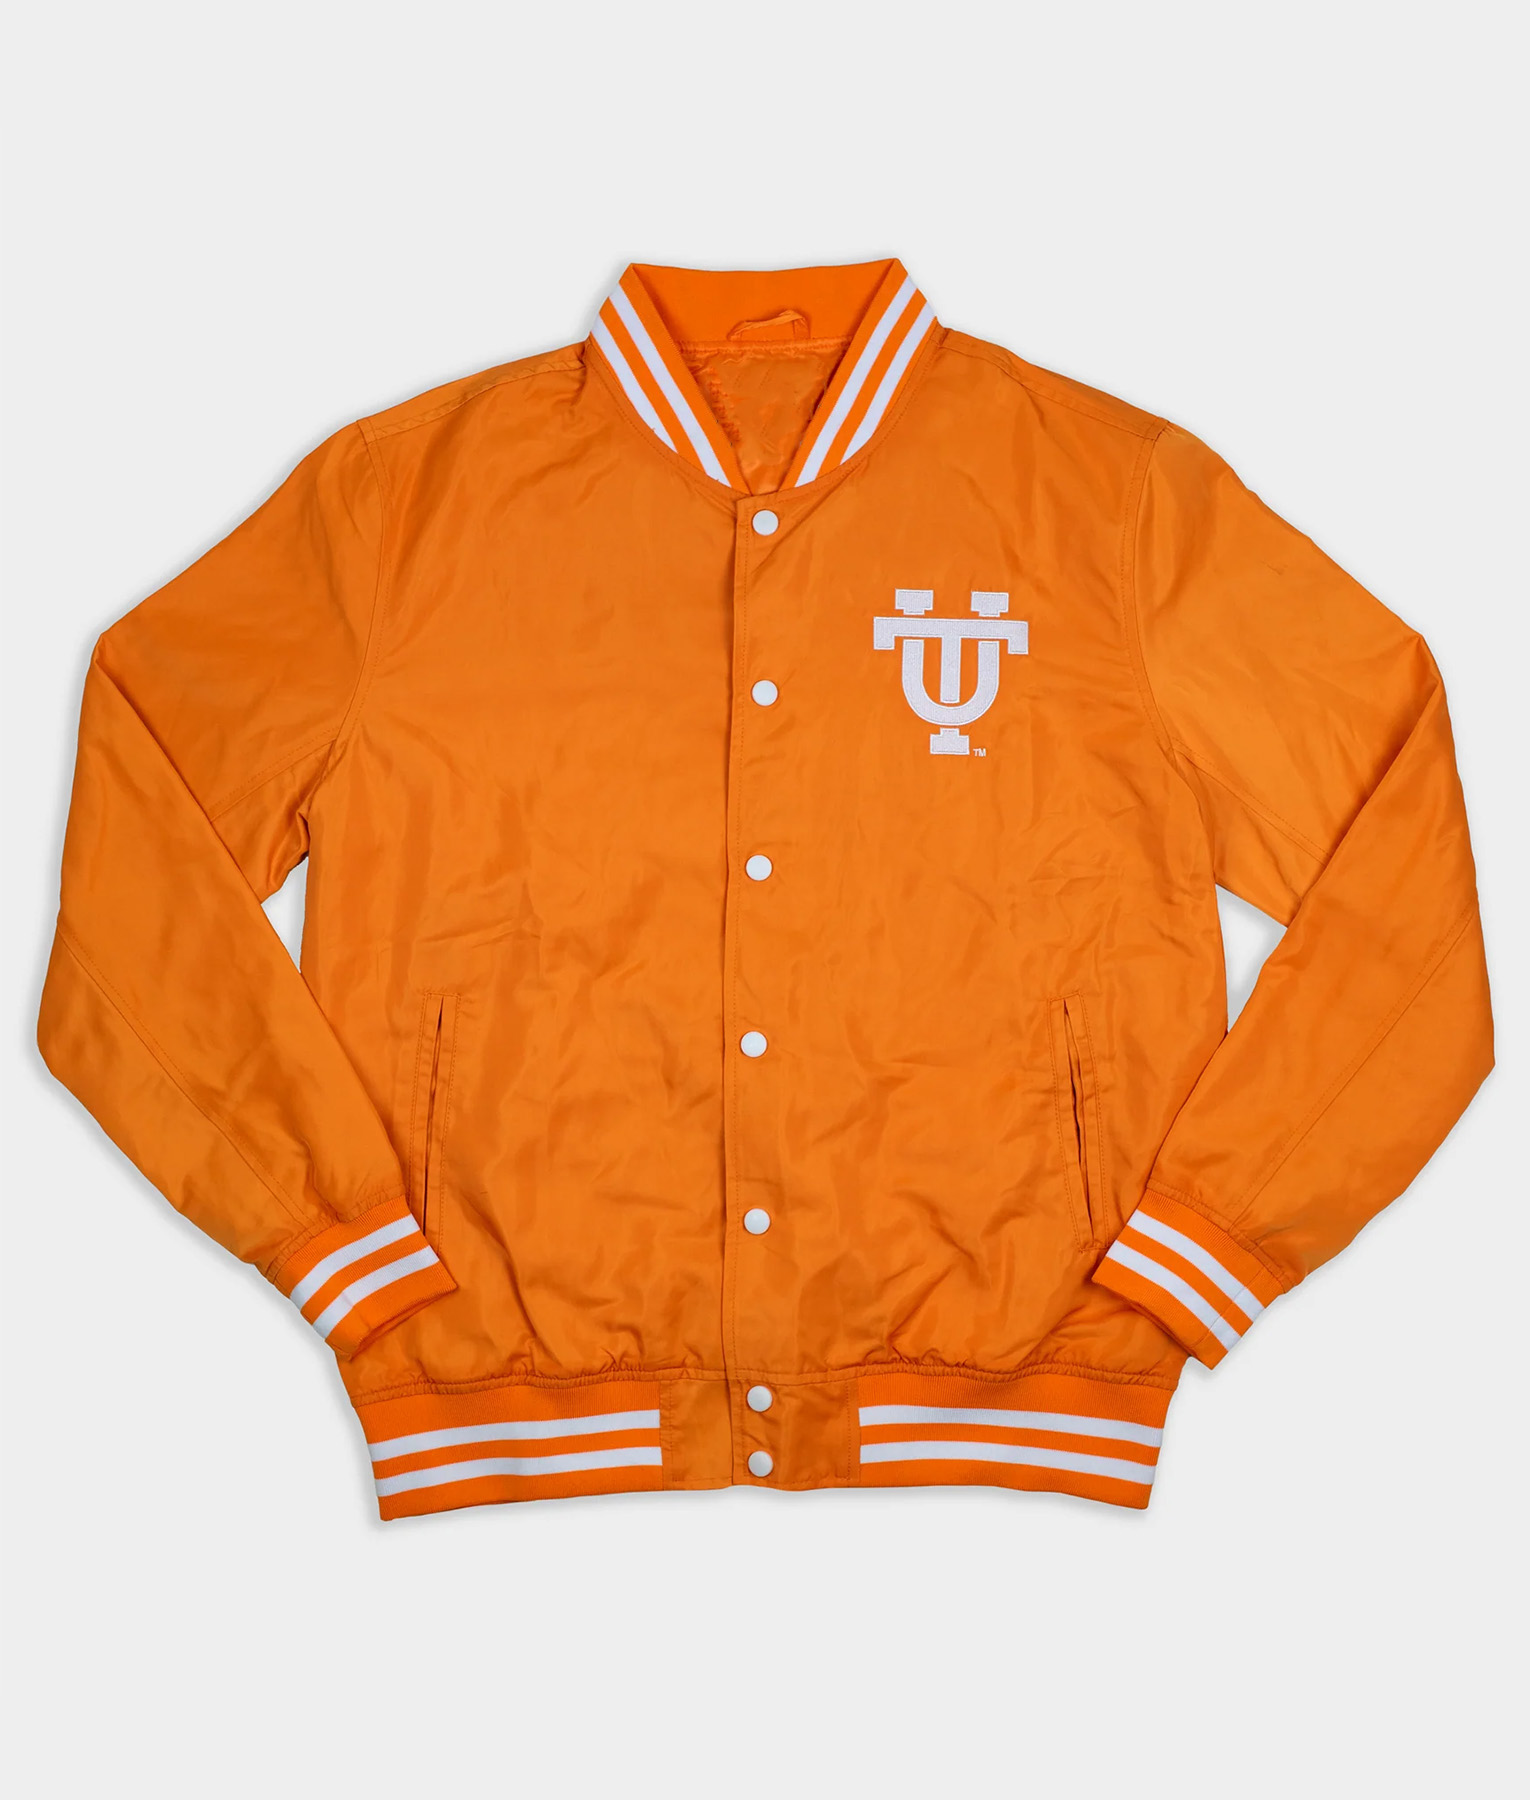 Tennessee Vols Orange Varsity Jacket (3)